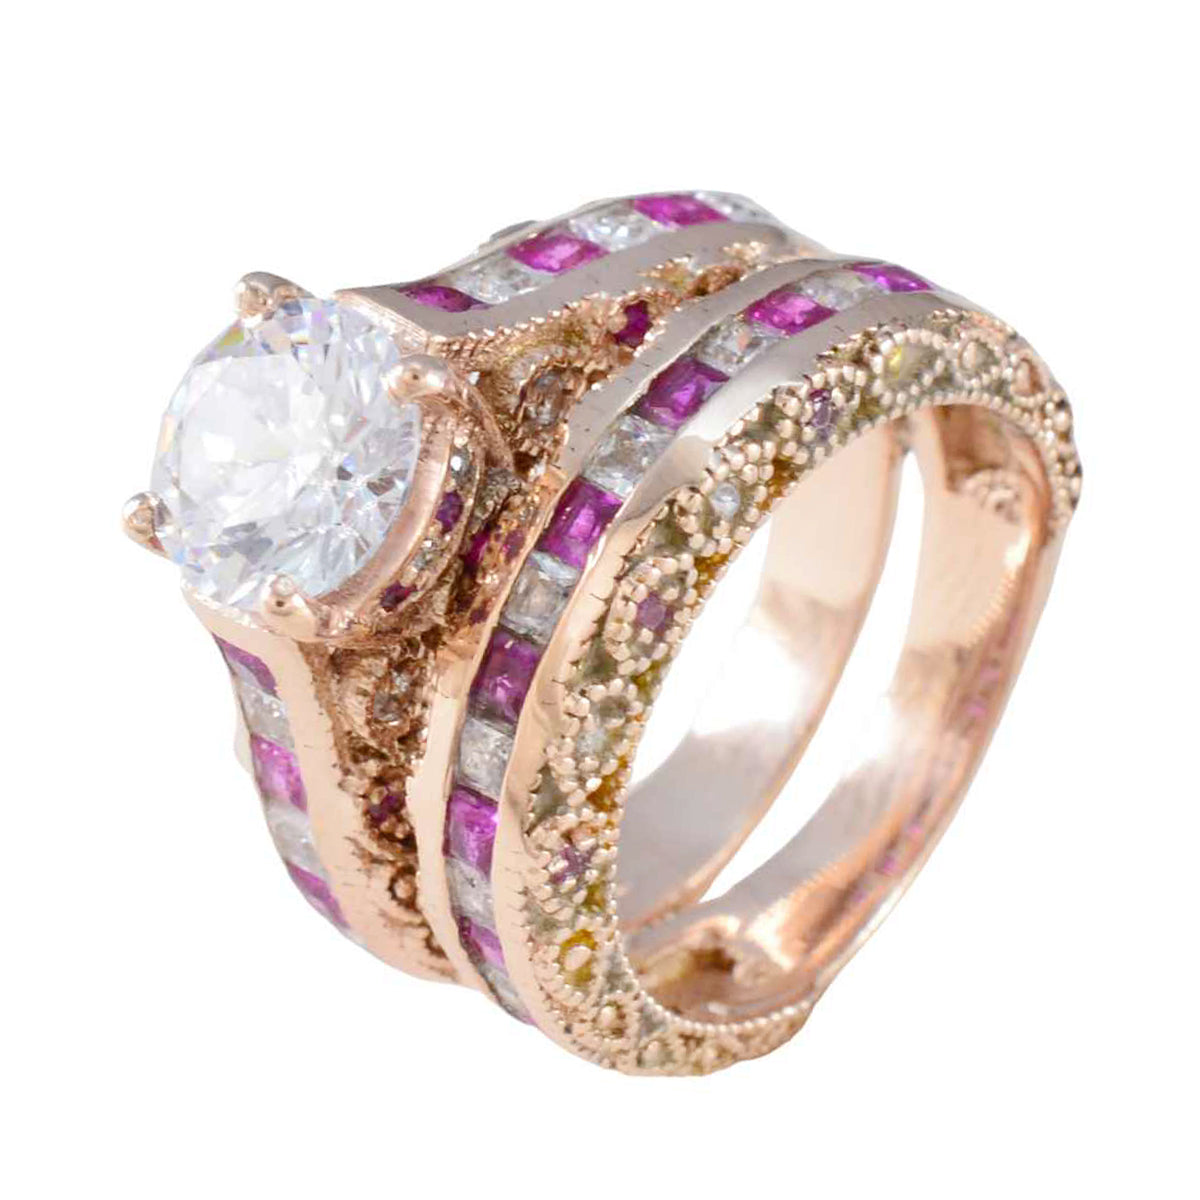 anello riyo in argento con placcatura in oro rosa, rubino, pietra cz, forma rotonda, montatura a punta, anello di compleanno con gioielli personalizzati